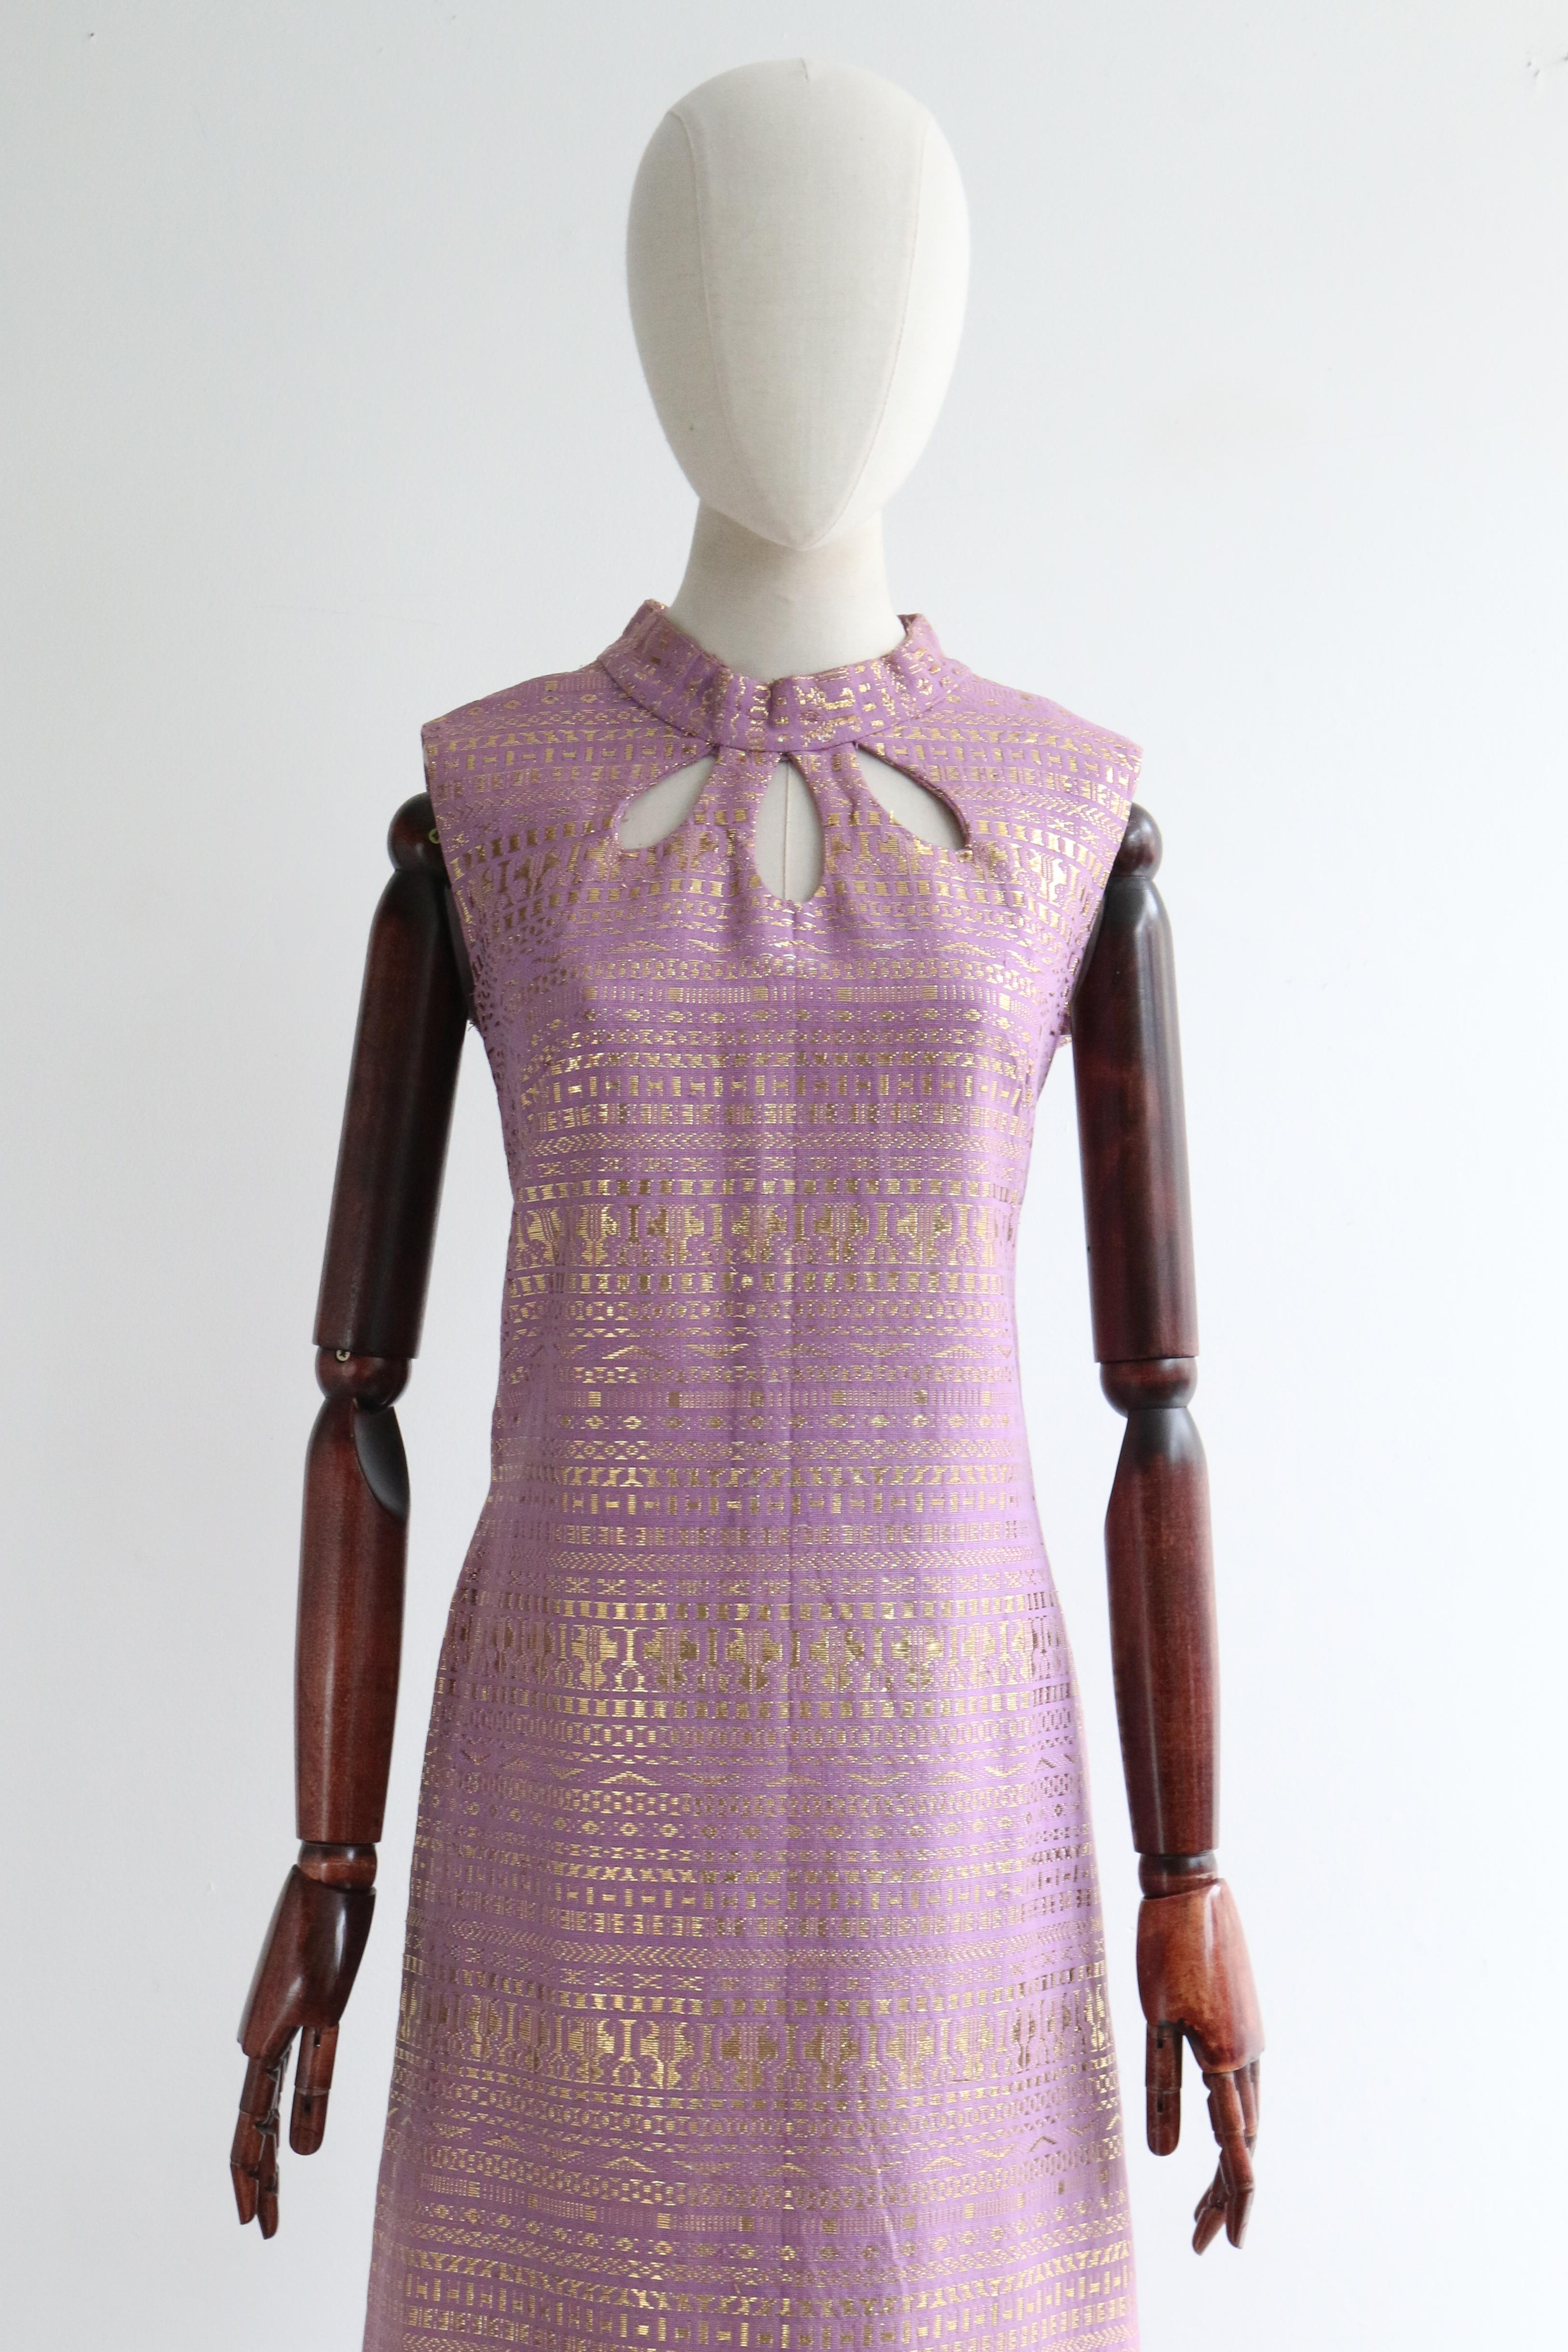 Silhouette classique en coton lilas tissé avec un motif géométrique en fil de lurex doré, cette robe des années 1960 est la pièce qu'il vous faut pour votre garde-robe de cocktail.  

Le col mandarin arrondi stylisé est encadré par une ligne